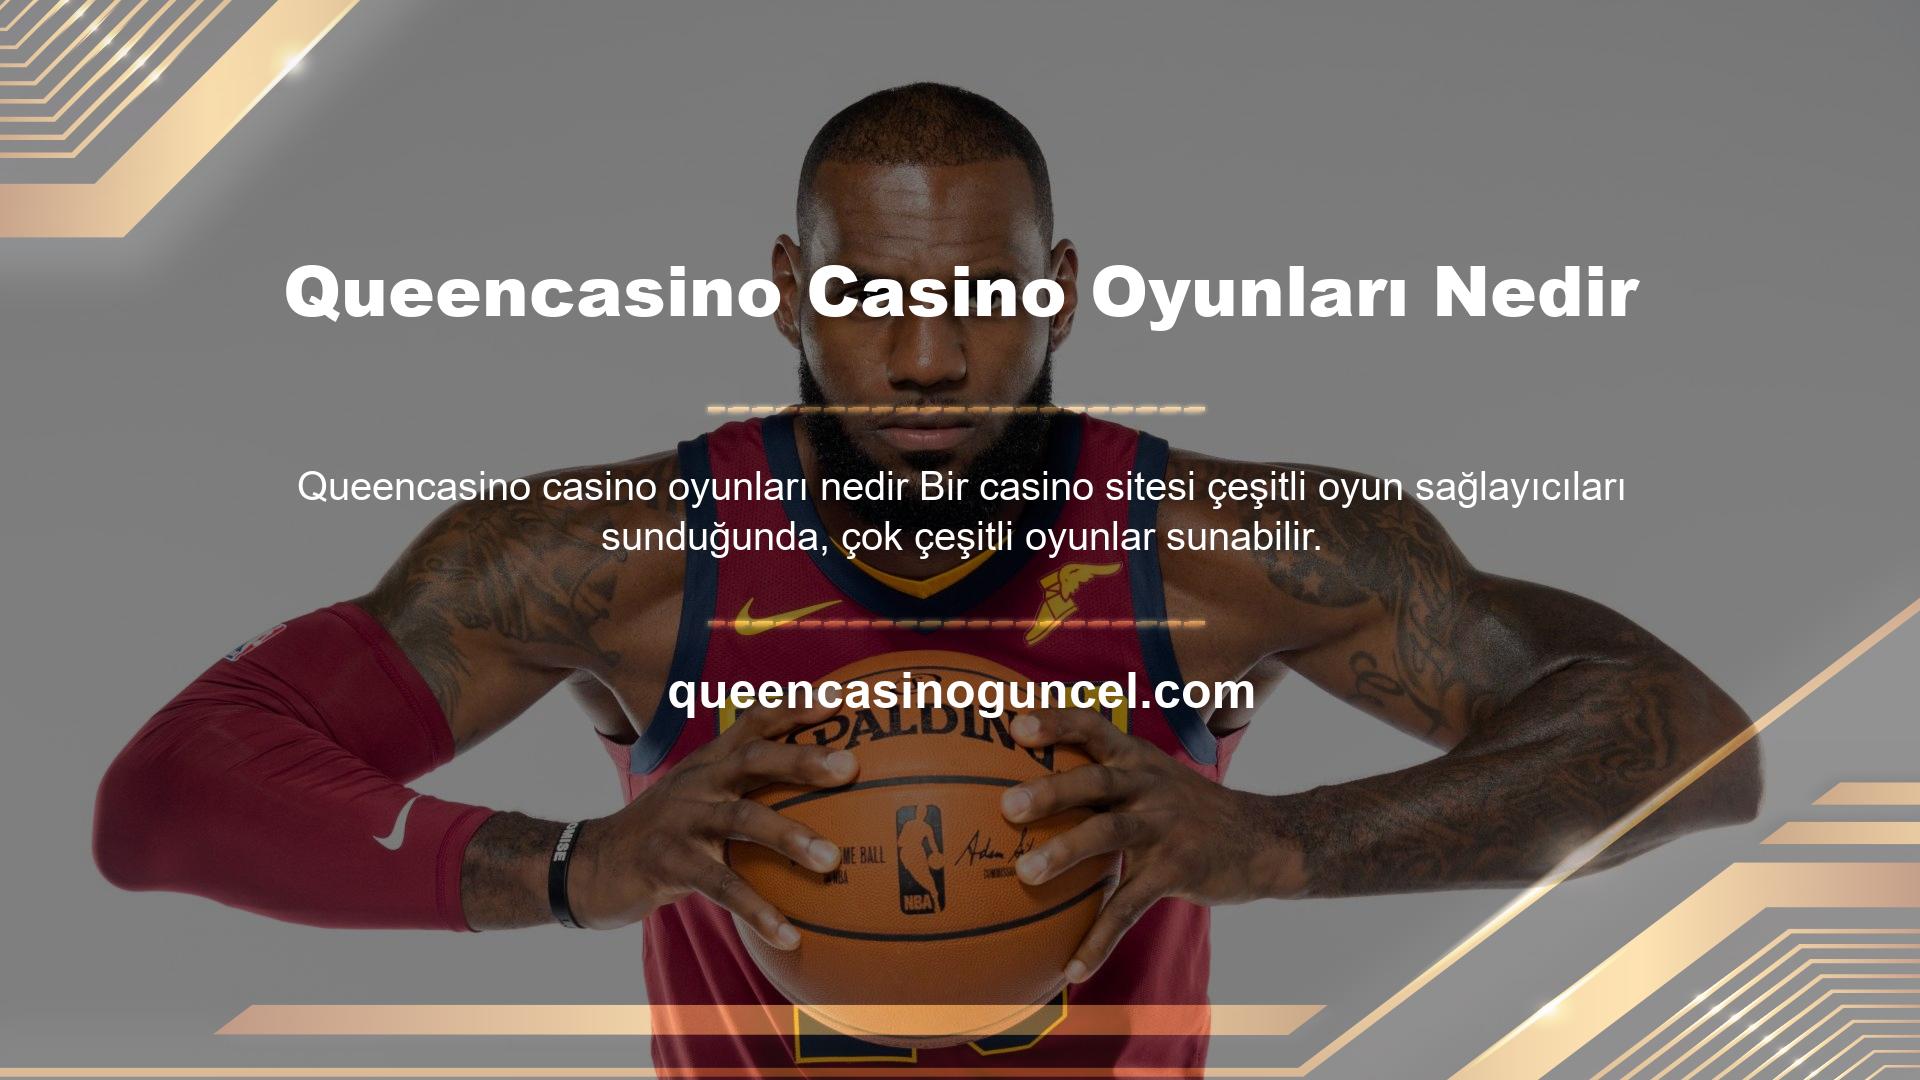 Queencasino Casino Oyunları Nedir